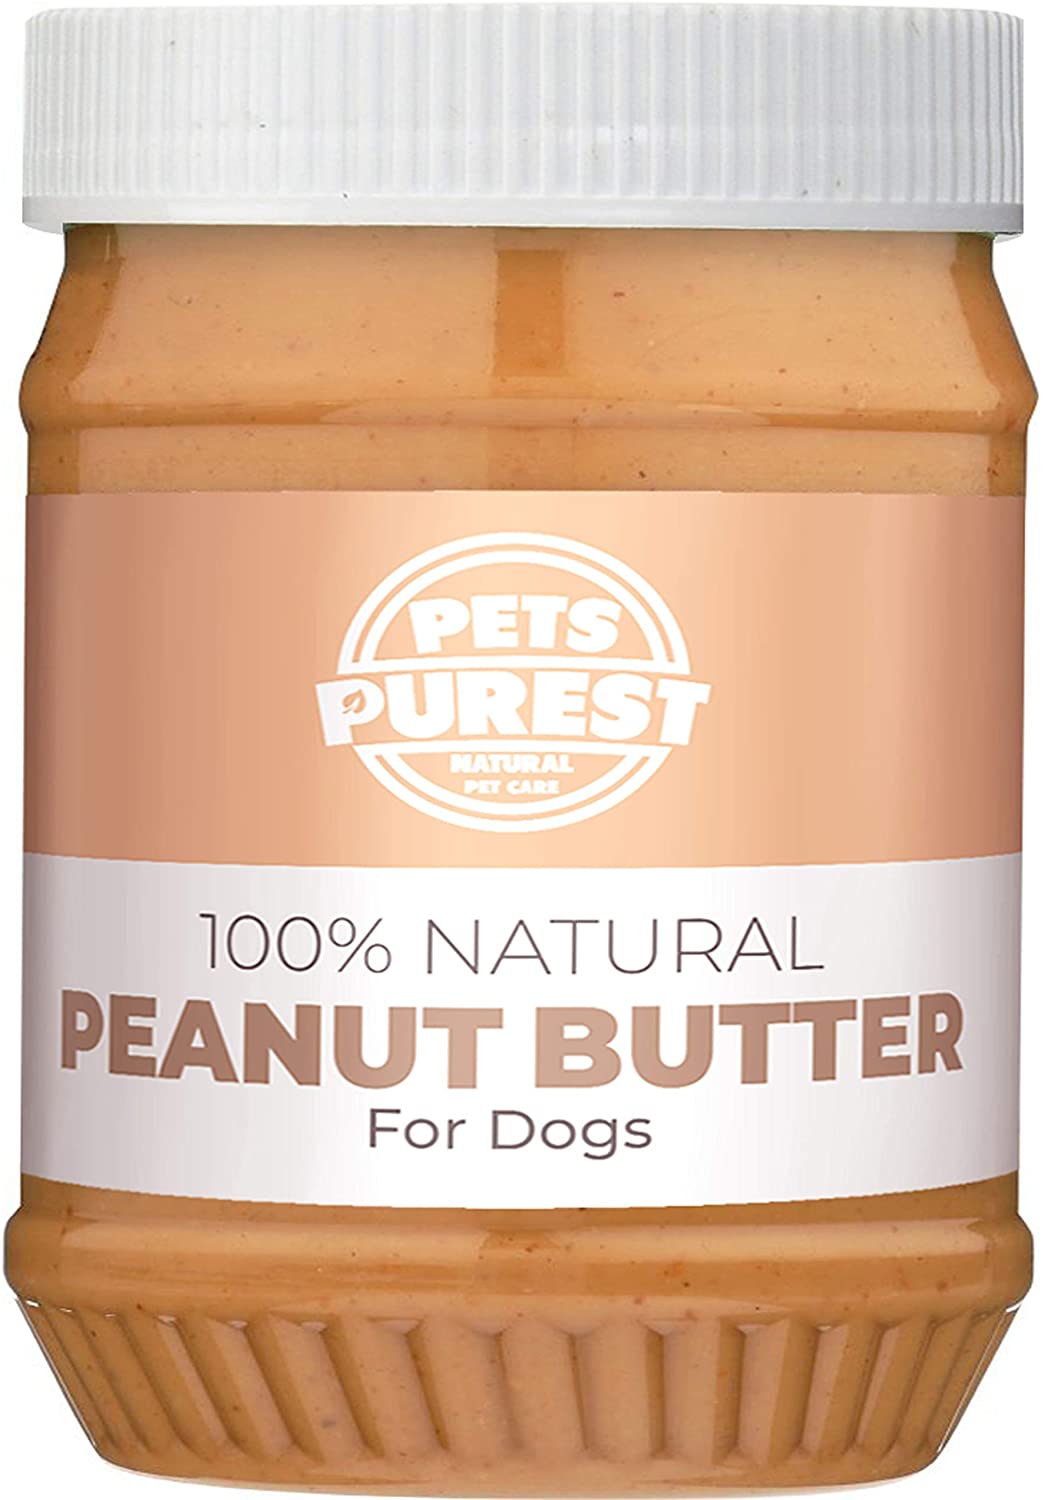  Pets Purest Manteca de maní 100% Natural para Perros (sin azúcar agregada, Sal o xilitol) sin Aceite de Palma, Trigo y Gluten (Fuente Saludable de proteínas) 